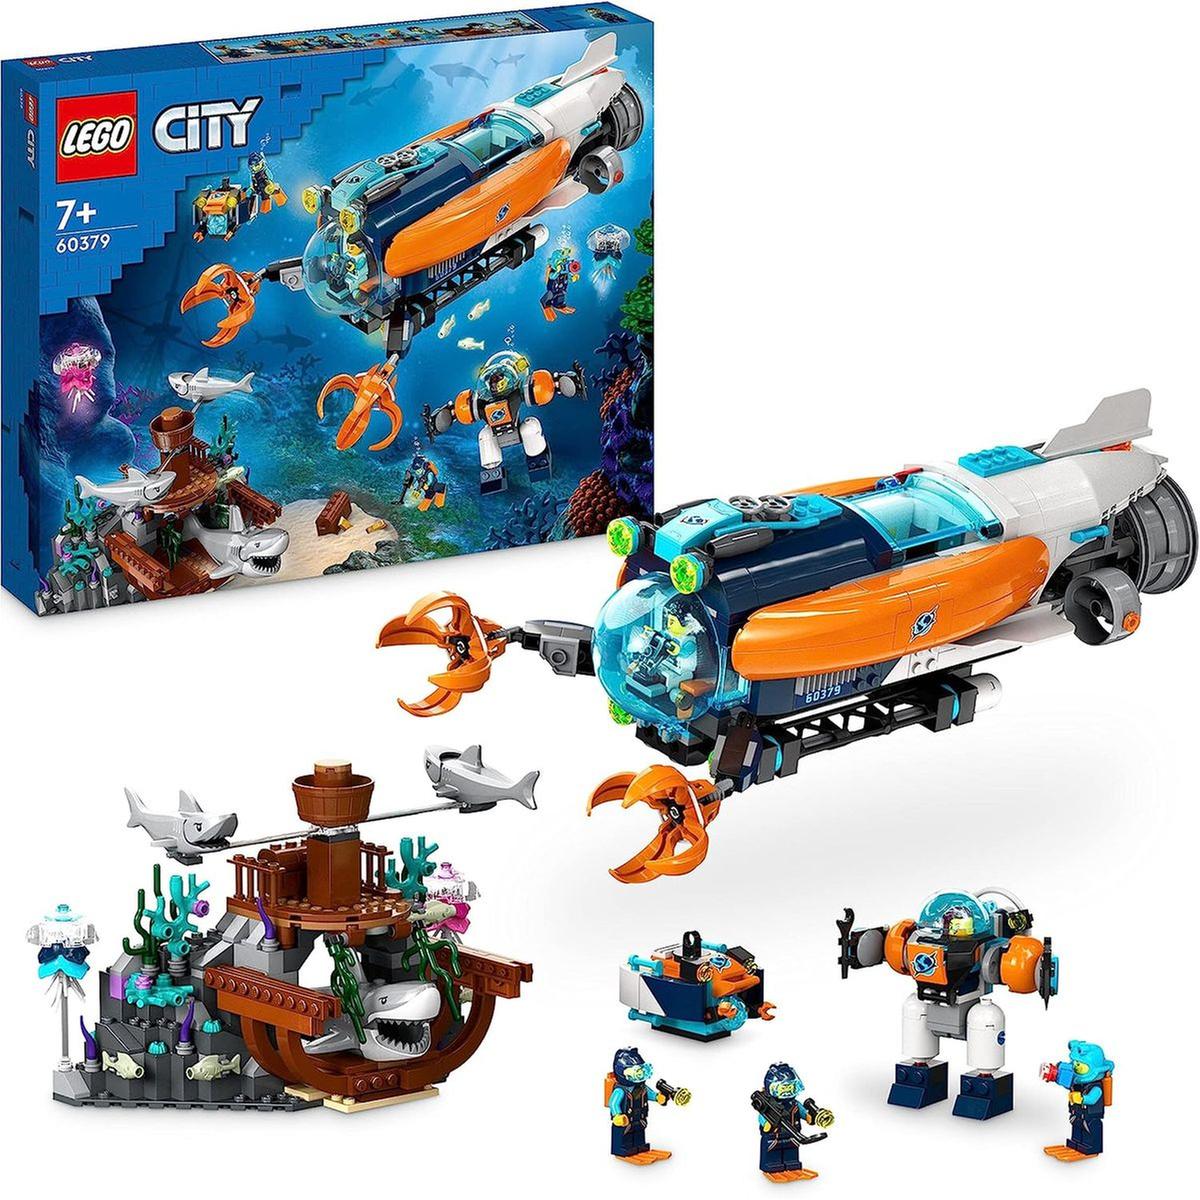 LEGO - Set de construcción submarino de exploración de las profundidades  con figuras de tiburones y minifiguras de buzo 60379 | Lego City |  Toys"R"Us España